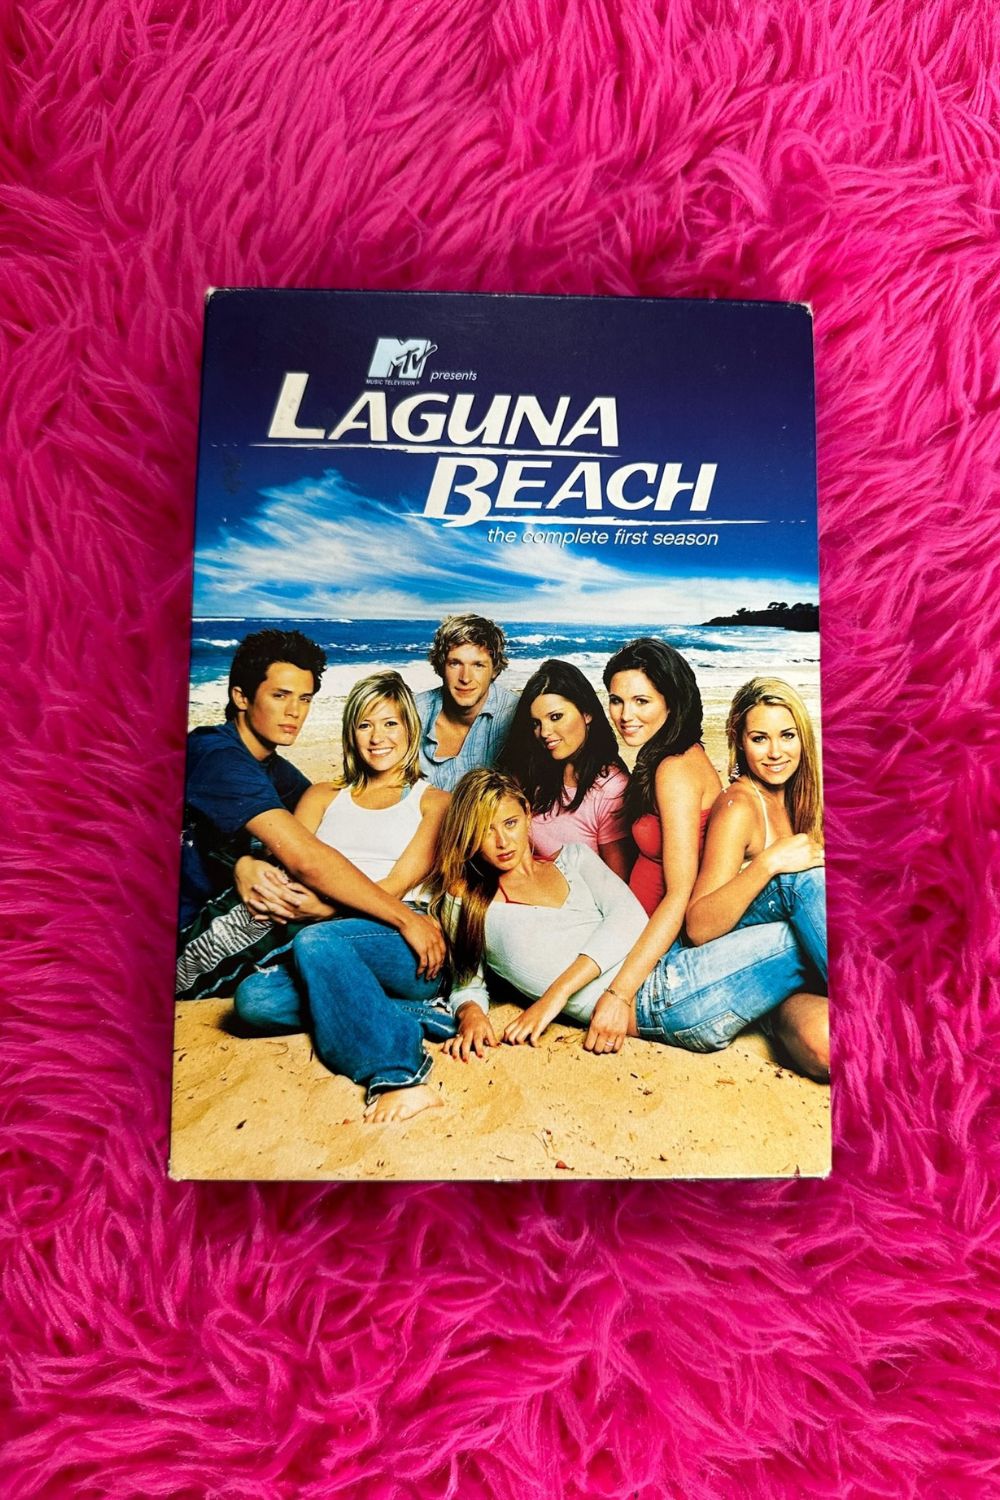 LAGUNA BEACH: THE COMPLETE FIRST SEASON DVD*